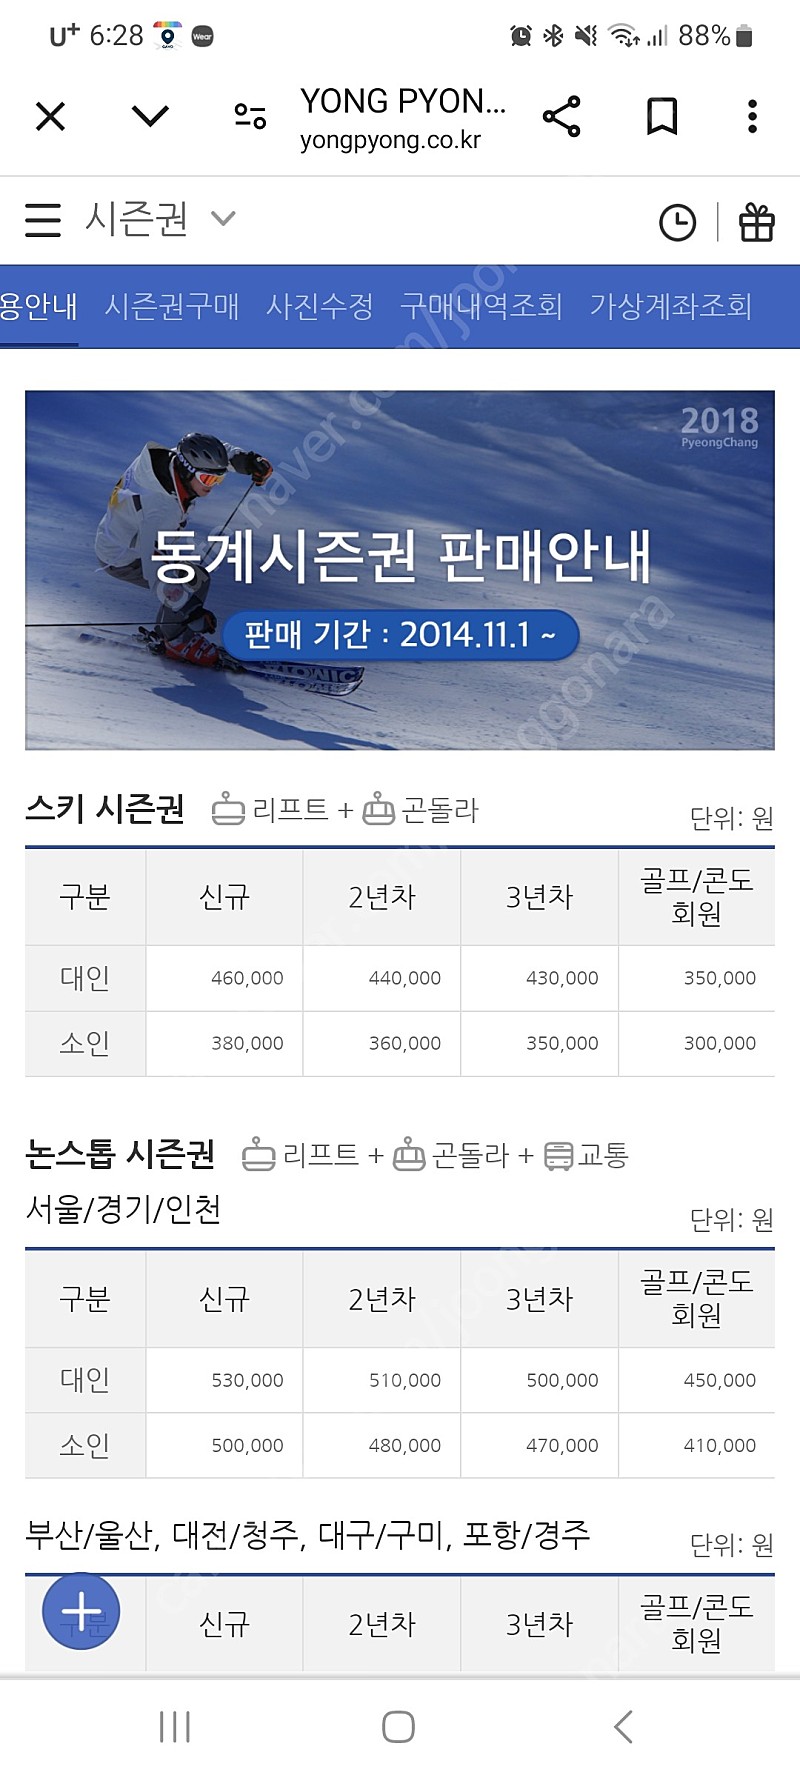 24/25 용평리조트 스키장(모나파크) 시즌티켓, 용평 시즌권 이용권 판매합니다.